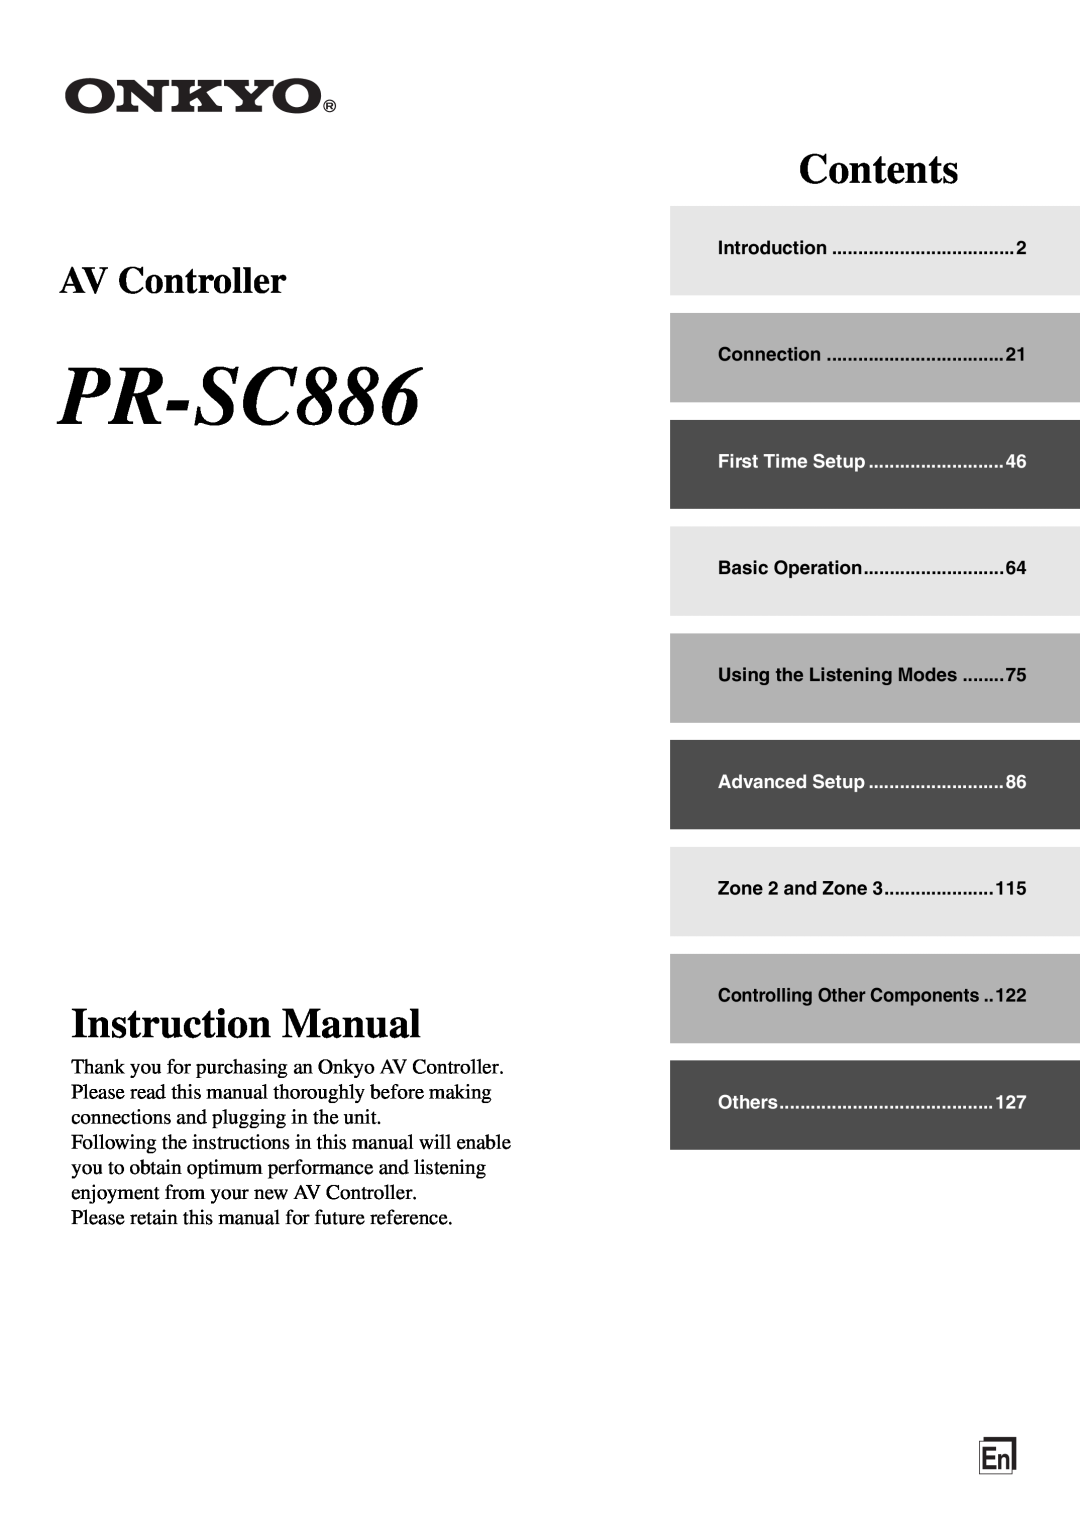 Onkyo PR-SC886 instruction manual Instruction Manual, Contents, AV Controller 